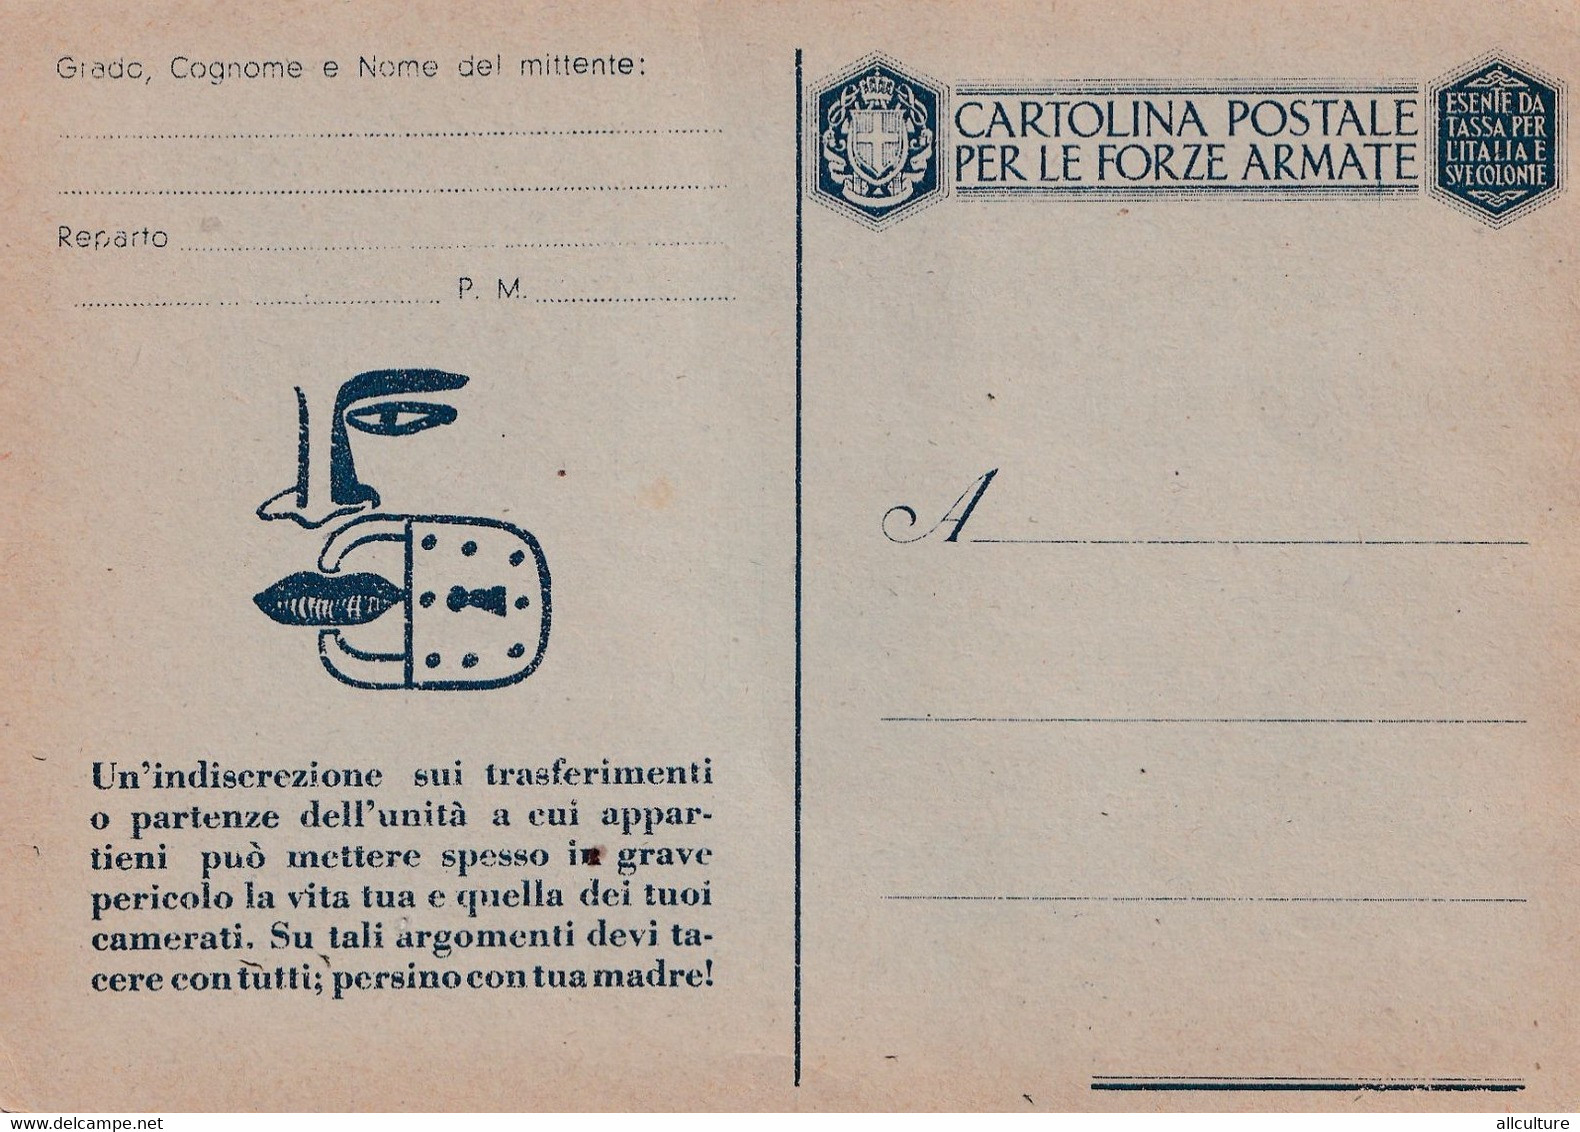 A4173- Cartolina Postale Per Le Forze Armate, Esente Da Tassa Per L;Italia E Sve Colonie Postcard - Storia Postale